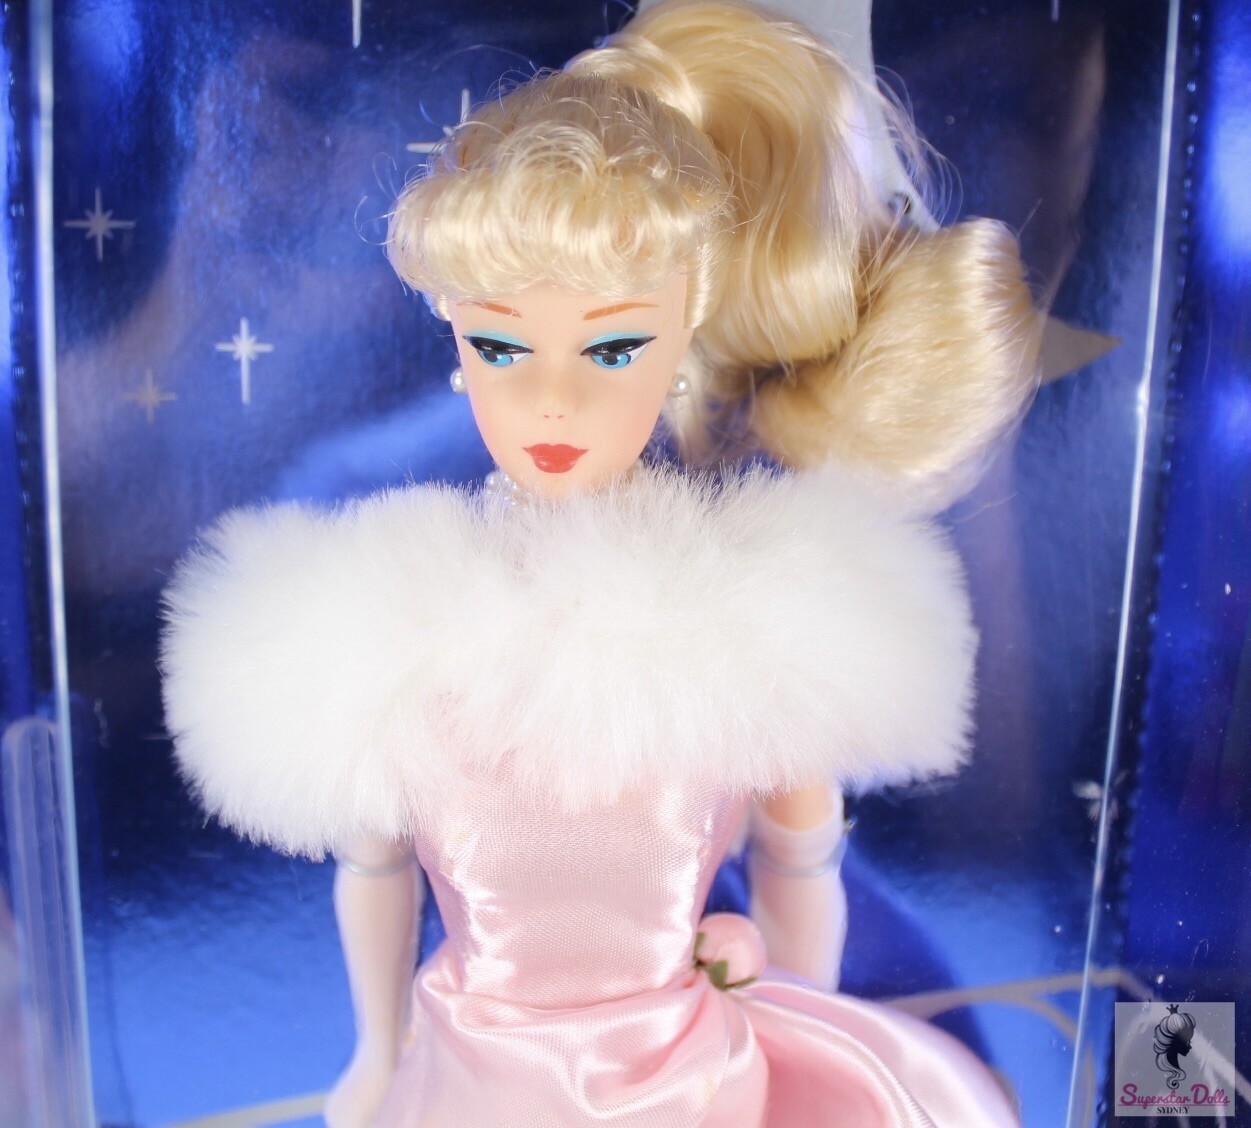 1995 Enchanted Evening (Blonde) Vintage Reproduction Brunette Barbie Doll